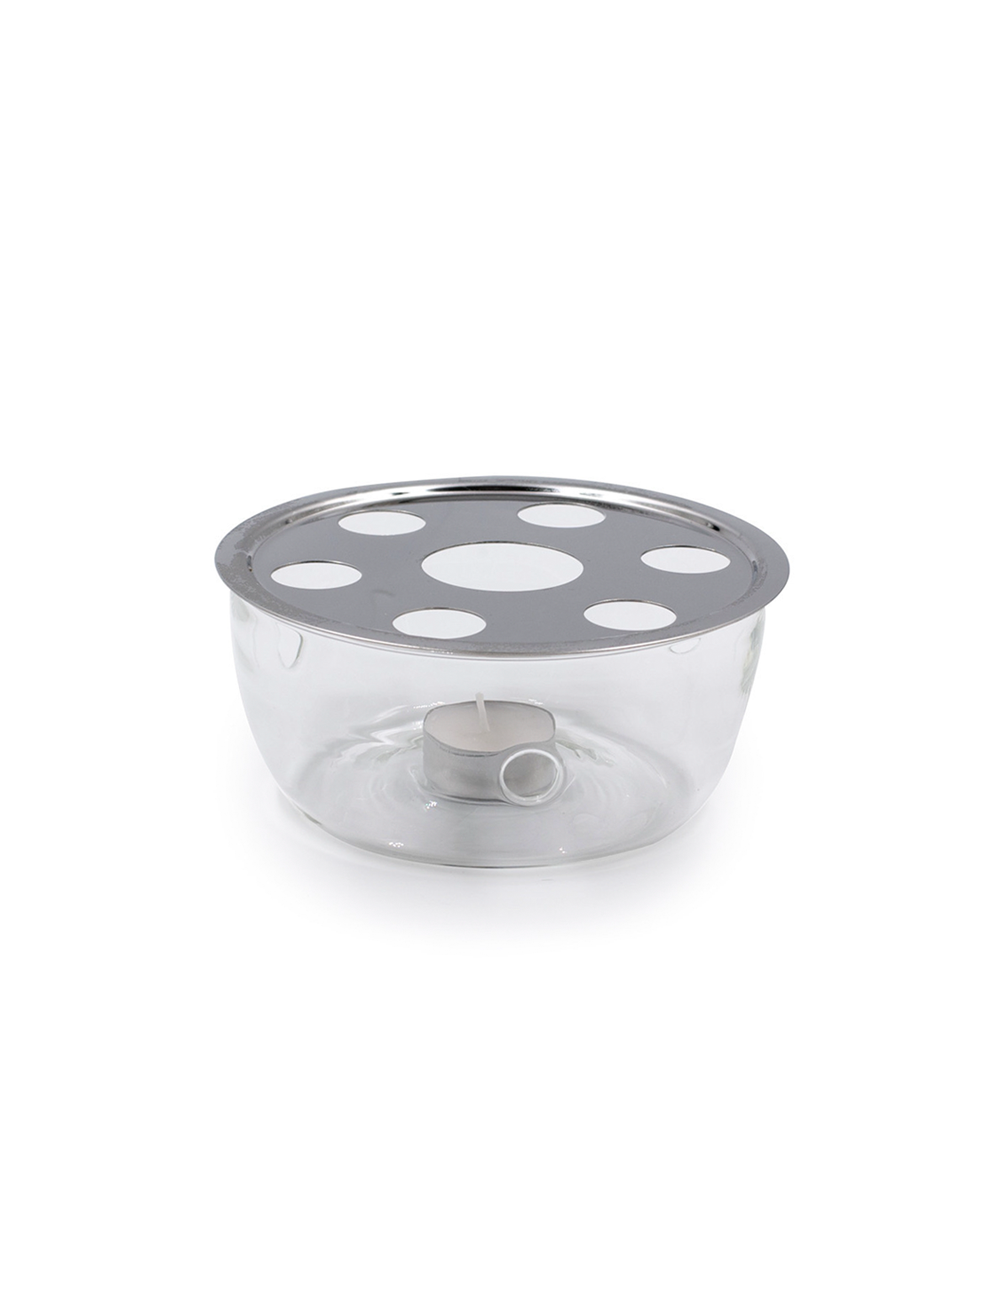 Scaldino per teiera in vetro borosilicato diametro 16 cm - La Pianta del Tè Acquisto on line